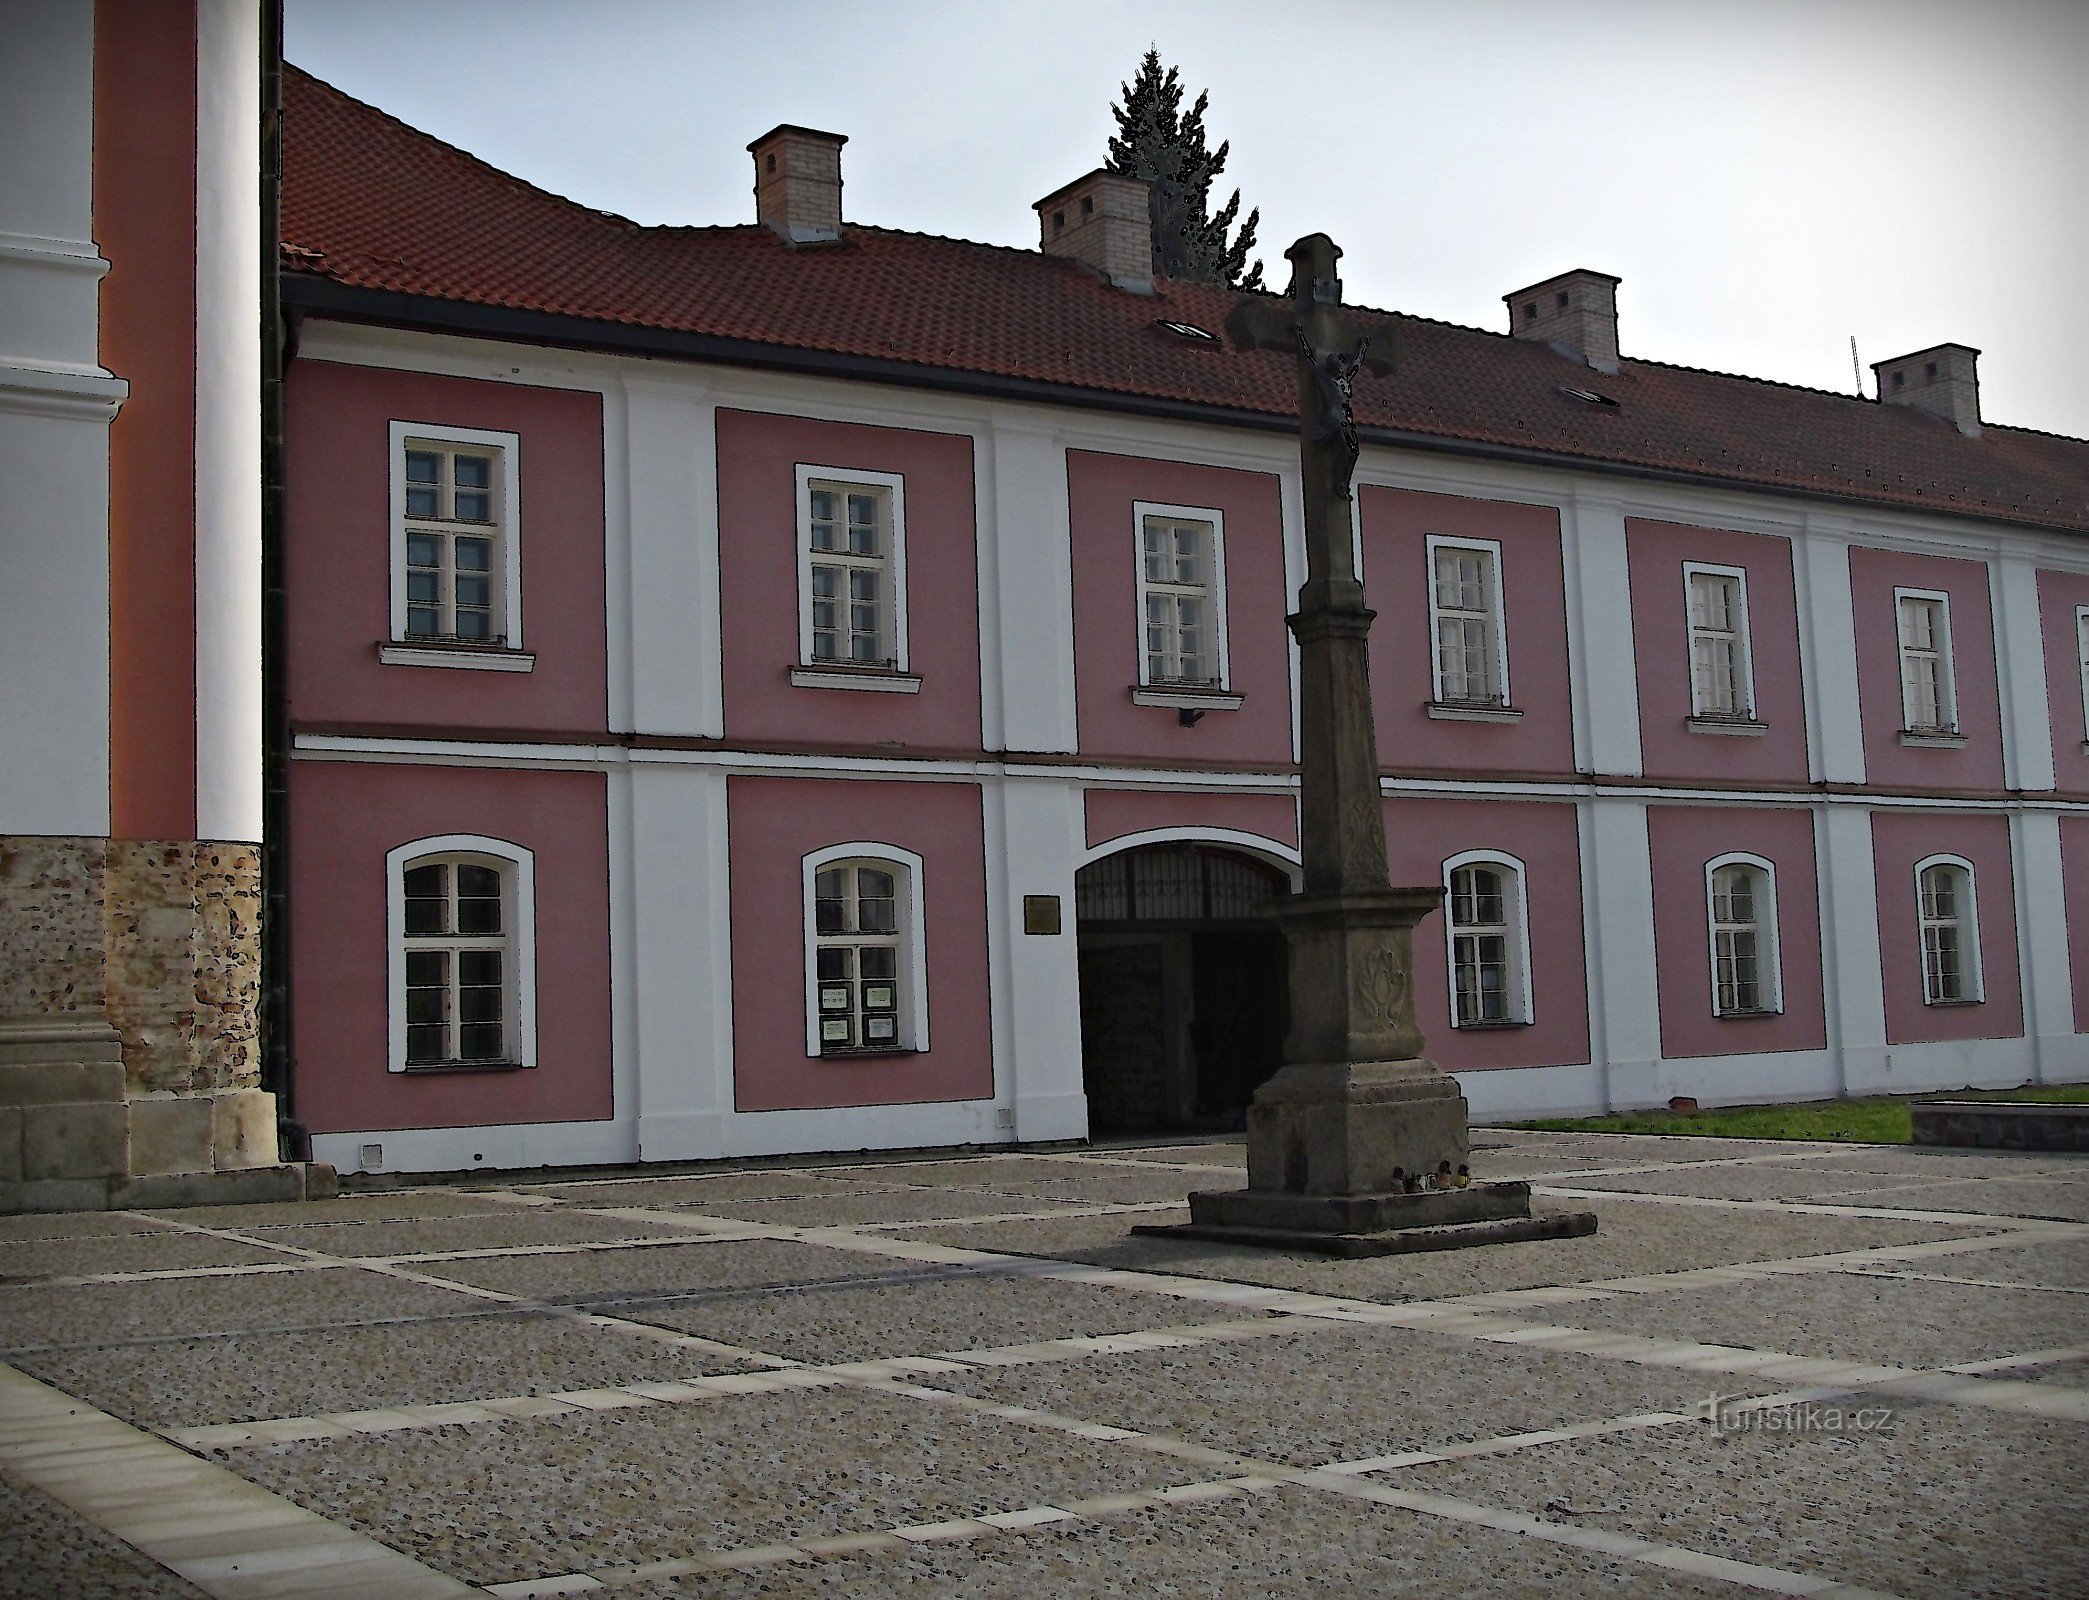 Štípa lângă Zlín - locul bisericii de pelerinaj